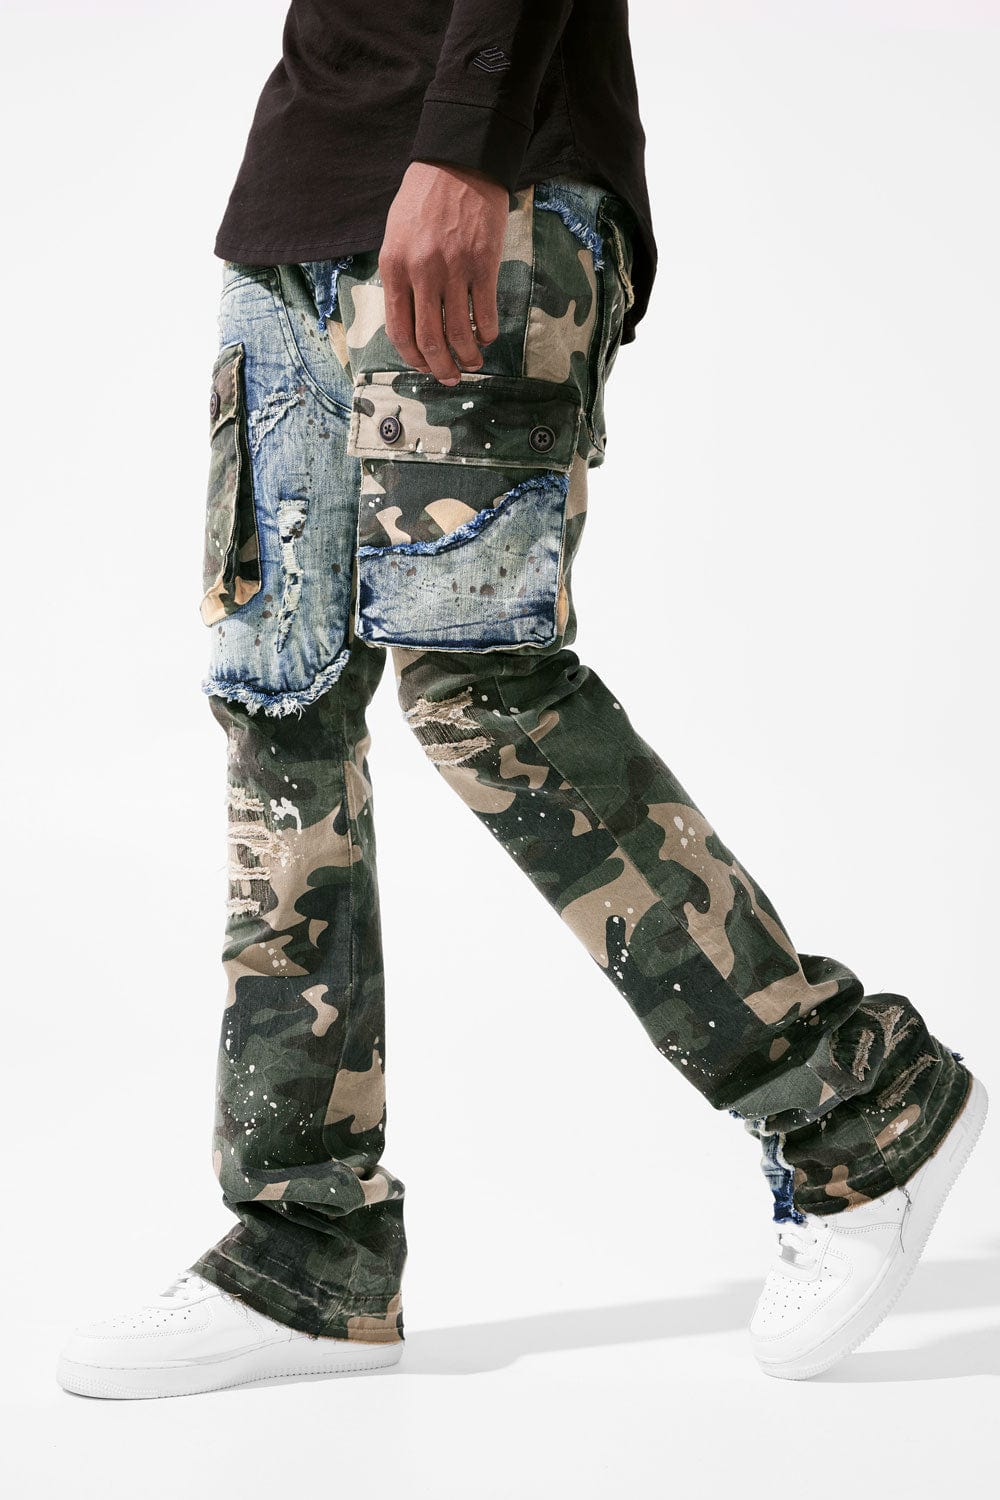 Rothco Cargo Pants Mens Small Camo Ultra Force BDU Woodland Double Pockets  Para | eBay